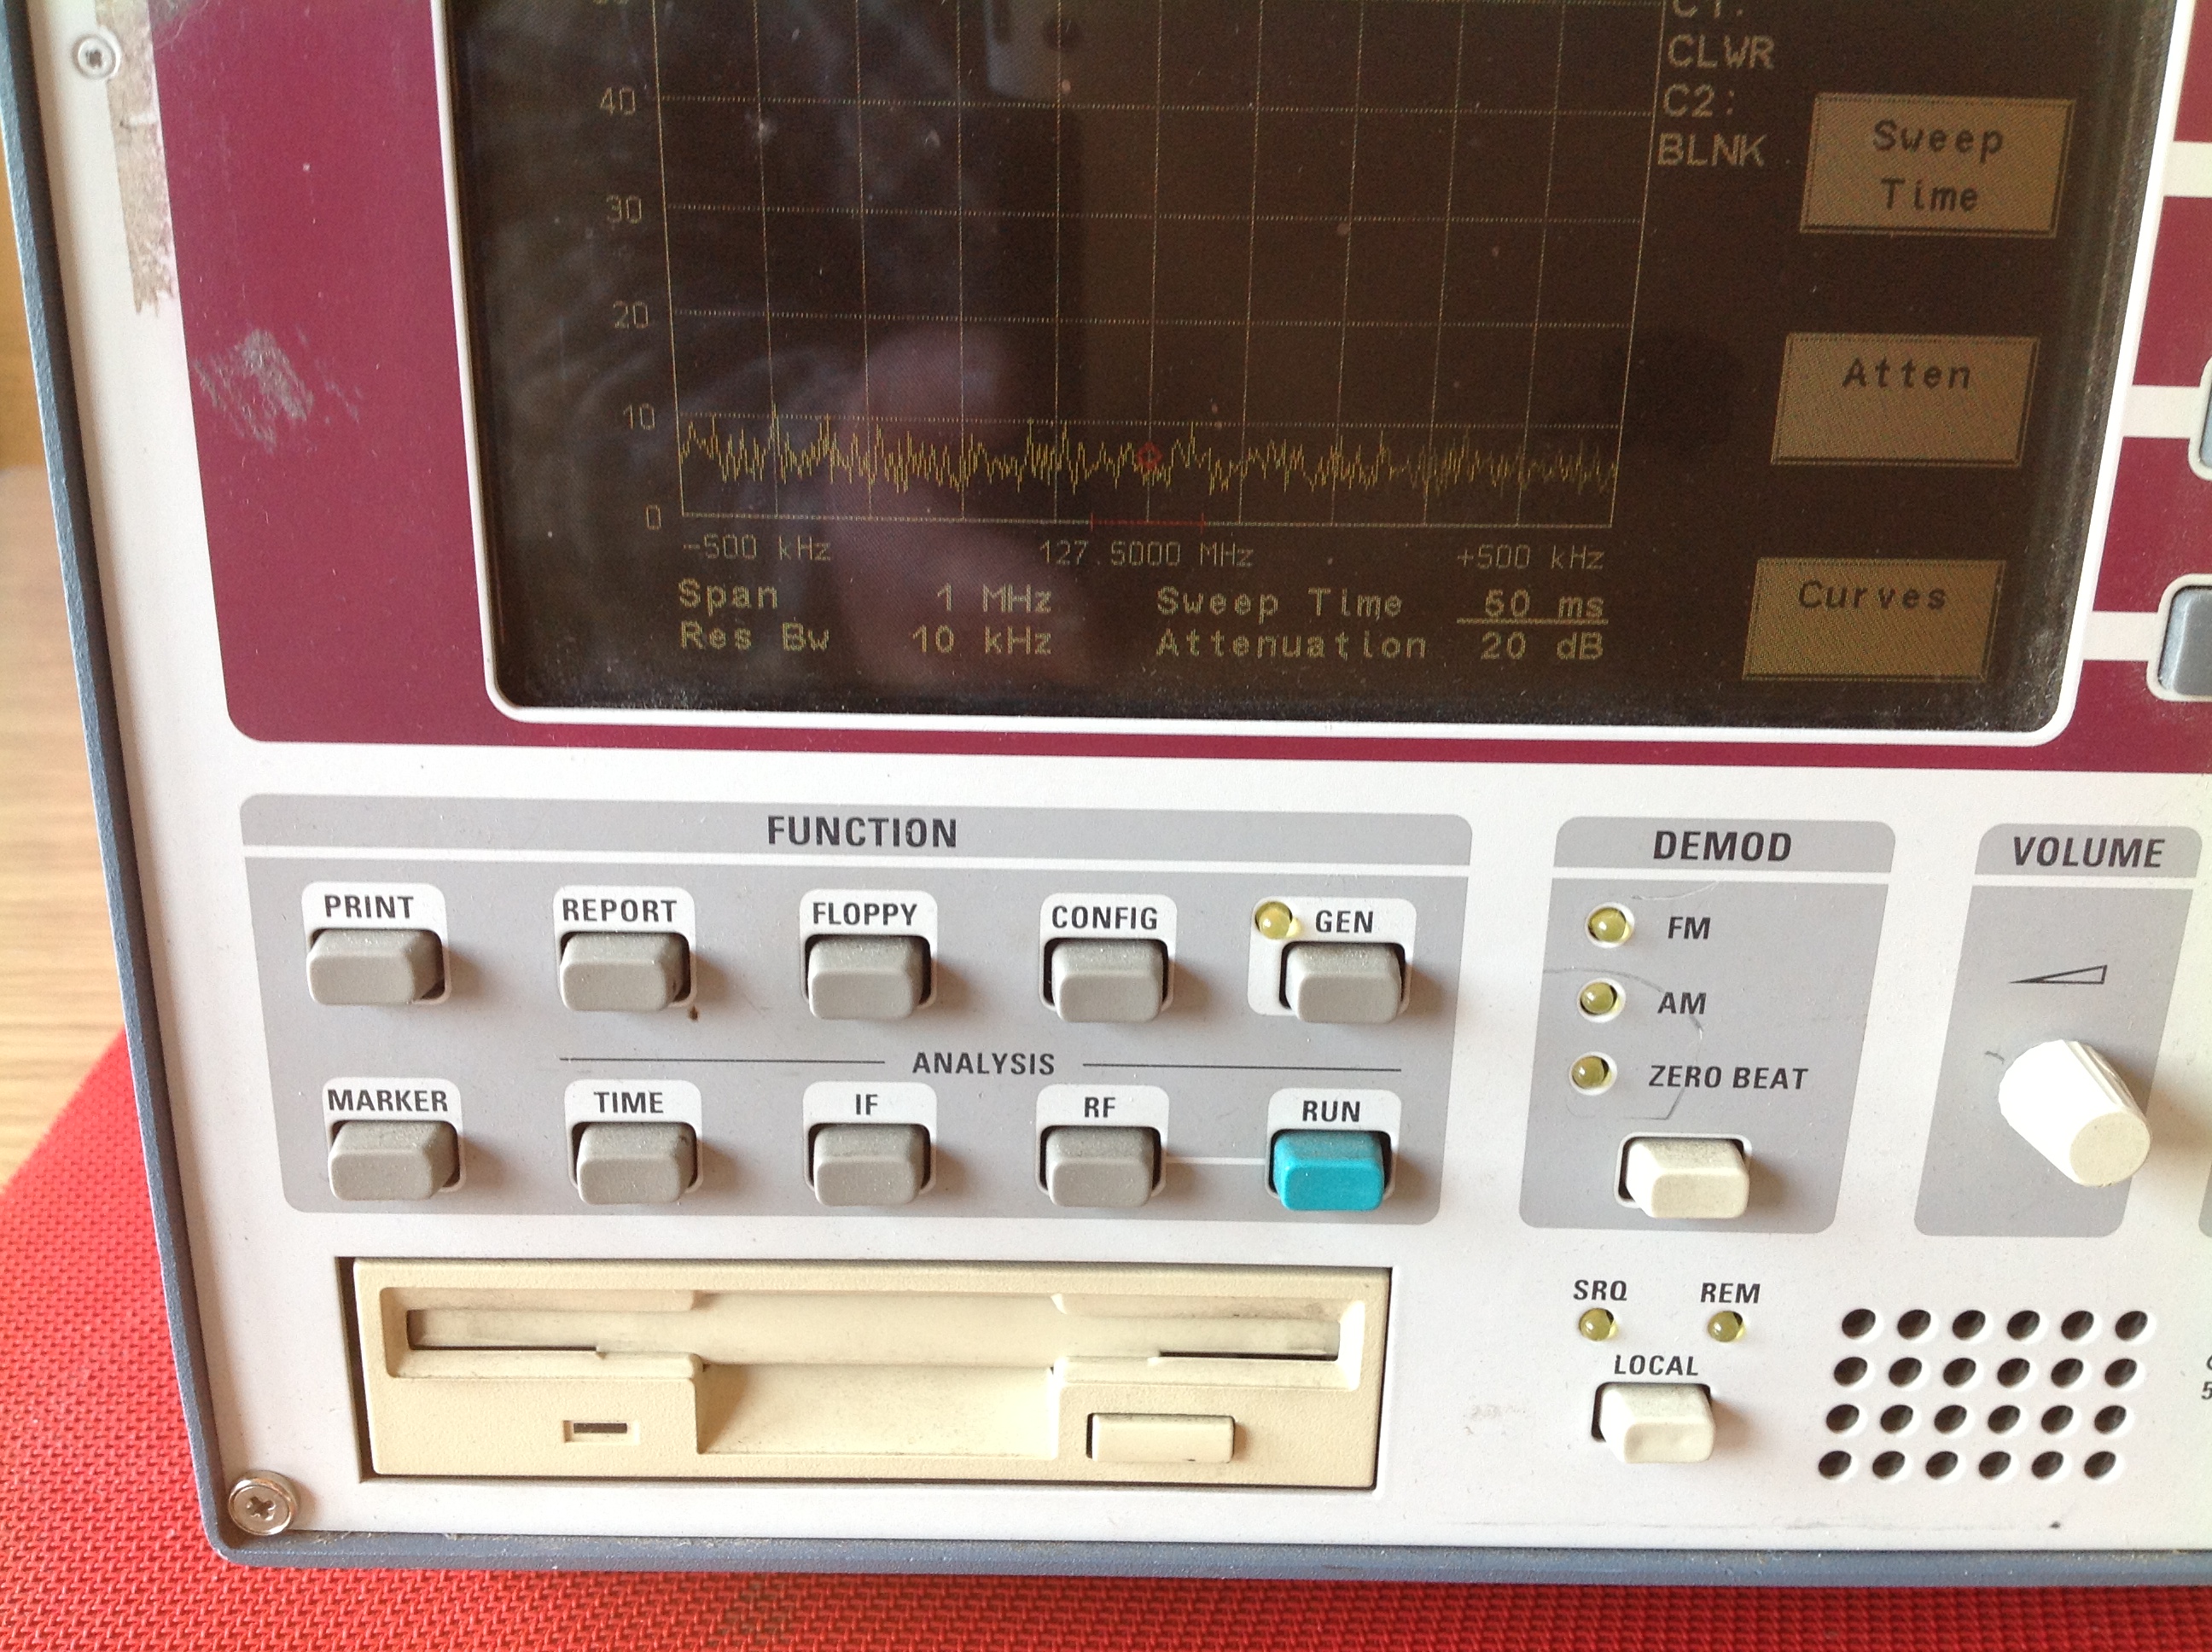 Rohde & Schwarz Emi Test Receiver, Funkstörmessempfänger ESCS 30   9 KHz....2750 MHz